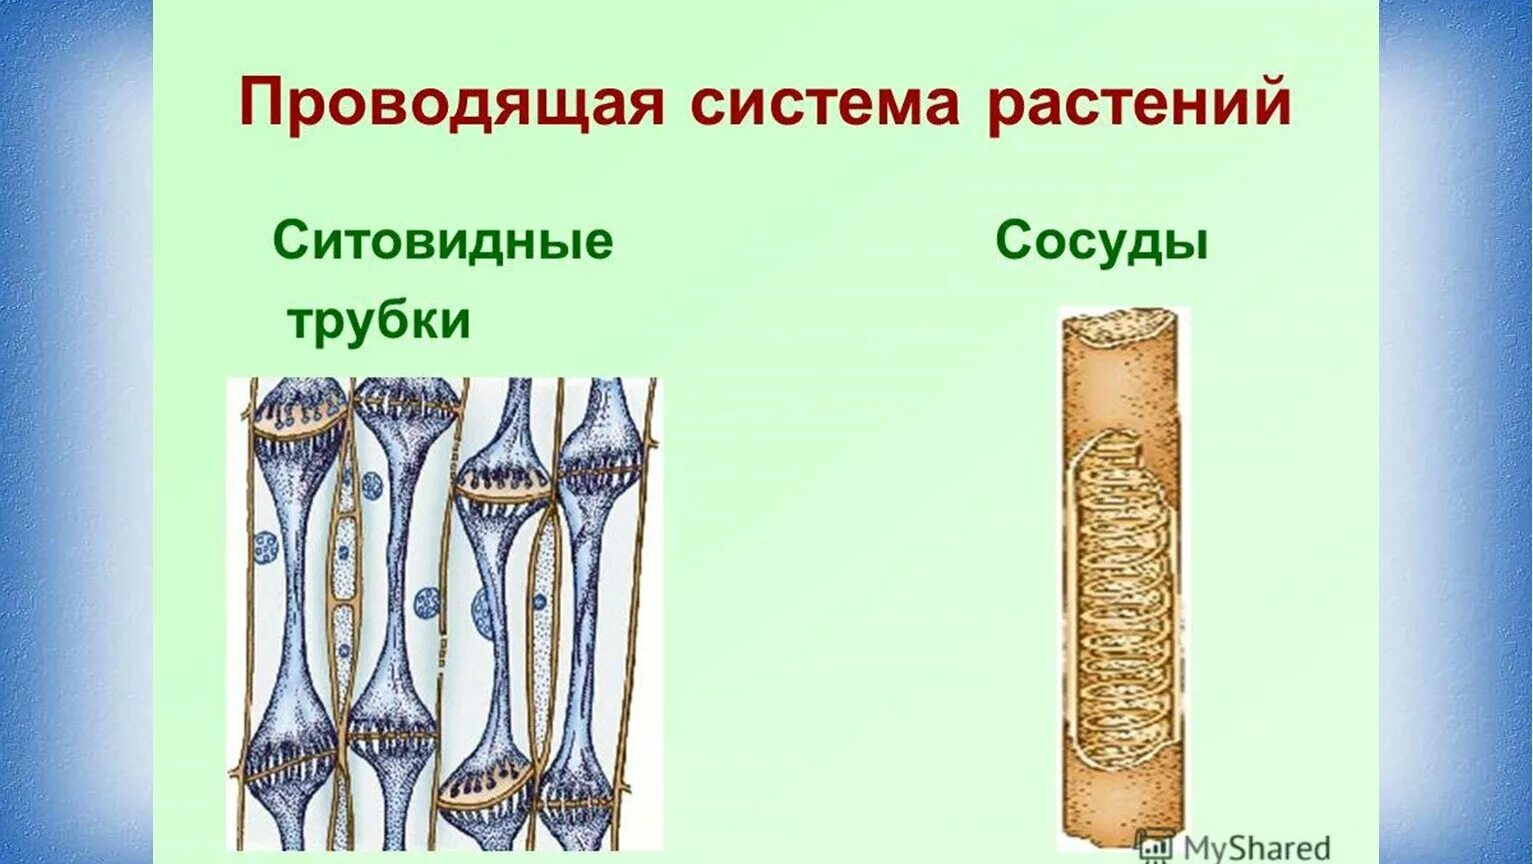 Ситовидные трубки и сосуды биология 6. Ткани растений сосуды и ситовидные трубки. Проводящие ткани сосуды и ситовидные трубки. Проводящая ткань растений ситовидные трубки. Какие вещества проводят сосуды